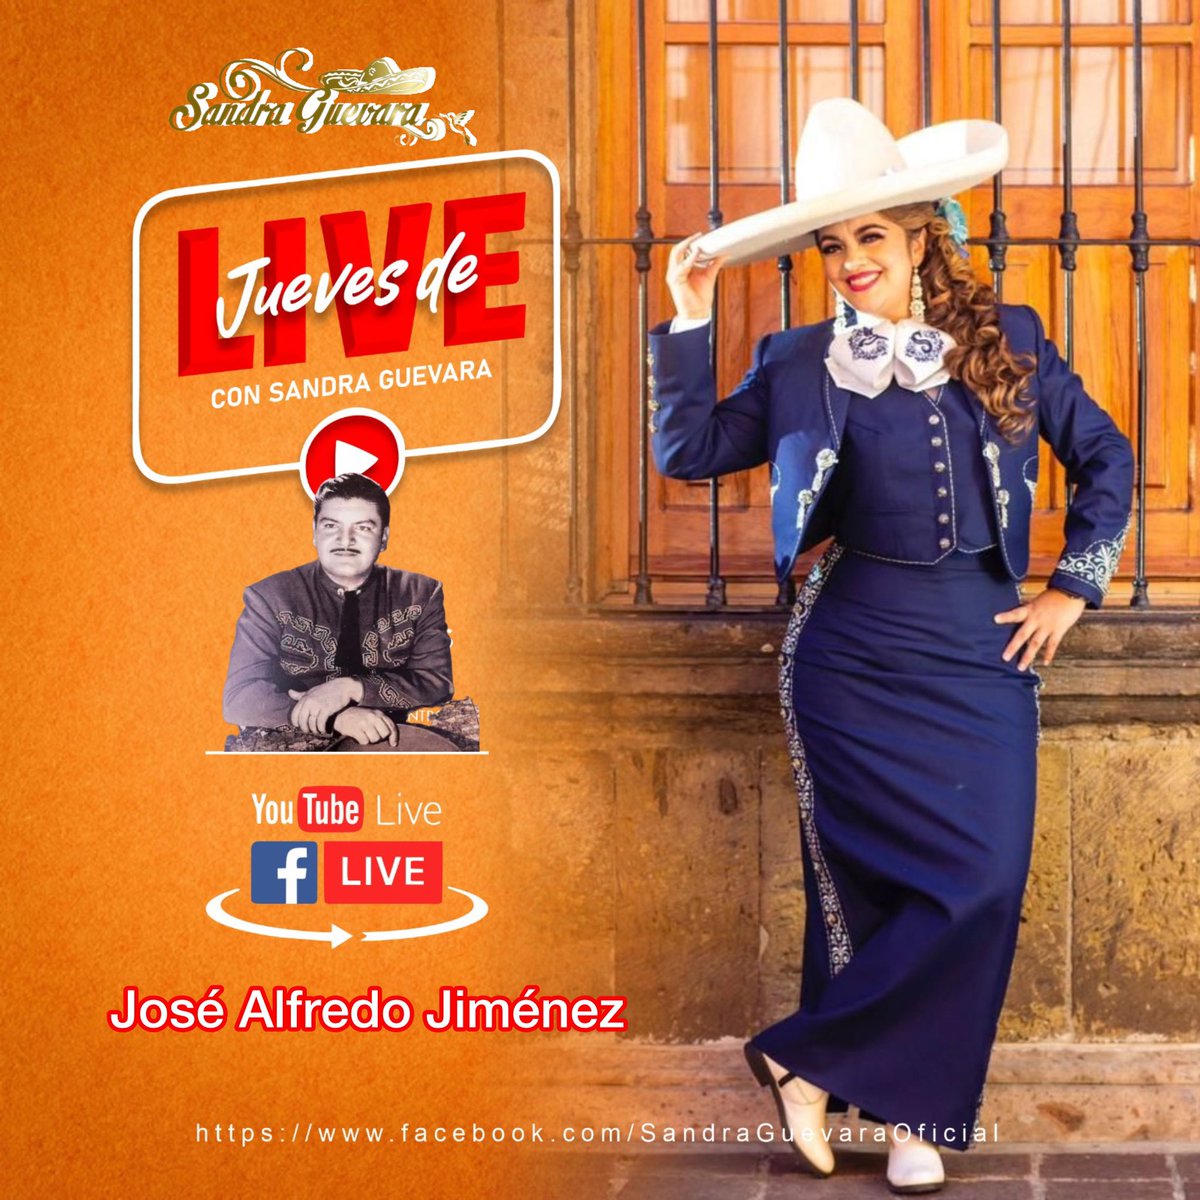 Mañana porque ustedes lo pidieron en homenaje al gran cantautor José Alfredo Jiménez 👏🏻🎤🎬🤩👏🏻👏🏻👏🏻 no vemos mañana por mi página oficial de Facebook y y YouTube!!! 

#sandraguevara💜 #lareynadelamusicabravia👑 #mujeremprendedora #tapatiadecorazon #regionalmexicano